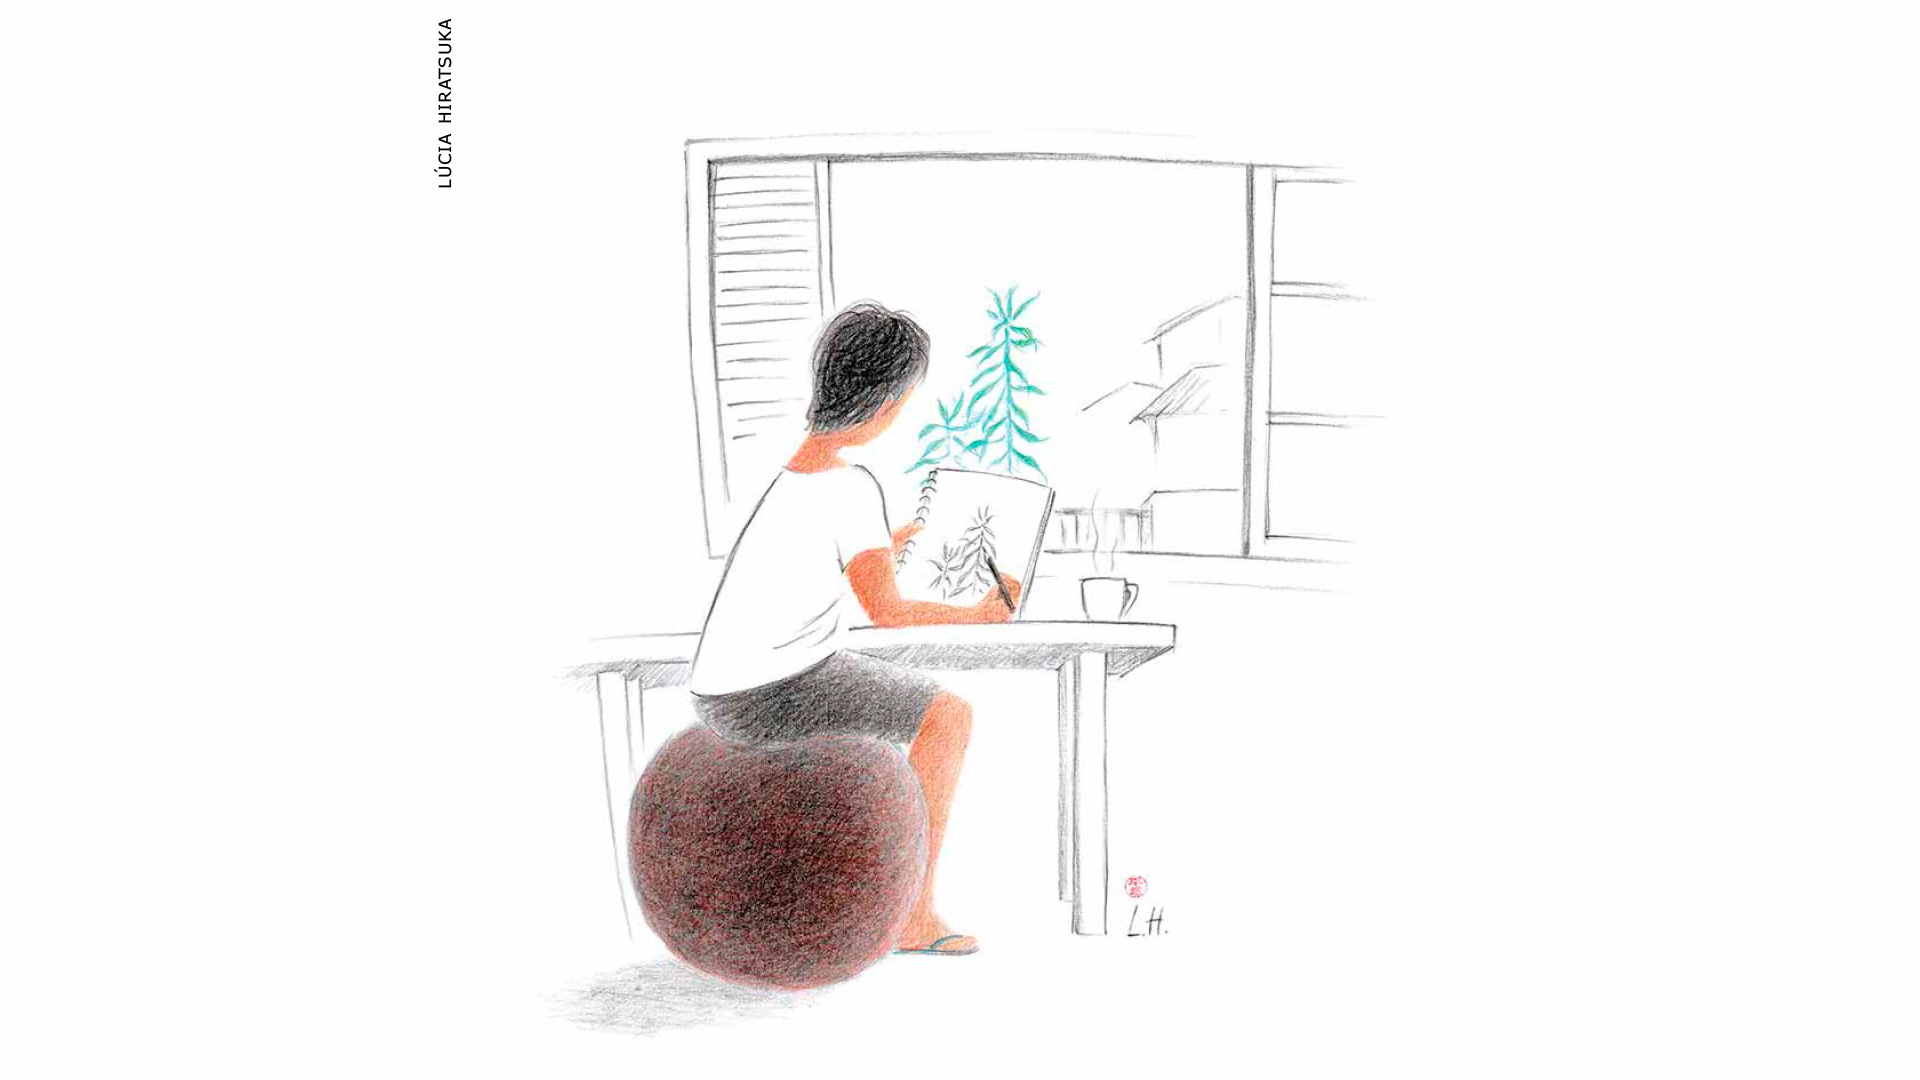 Ilustração de Lucia Hiratsuka onde se vê um menino sentado a uma escrivaninha desenhando uma árvore no papel que vêm através de sua janela